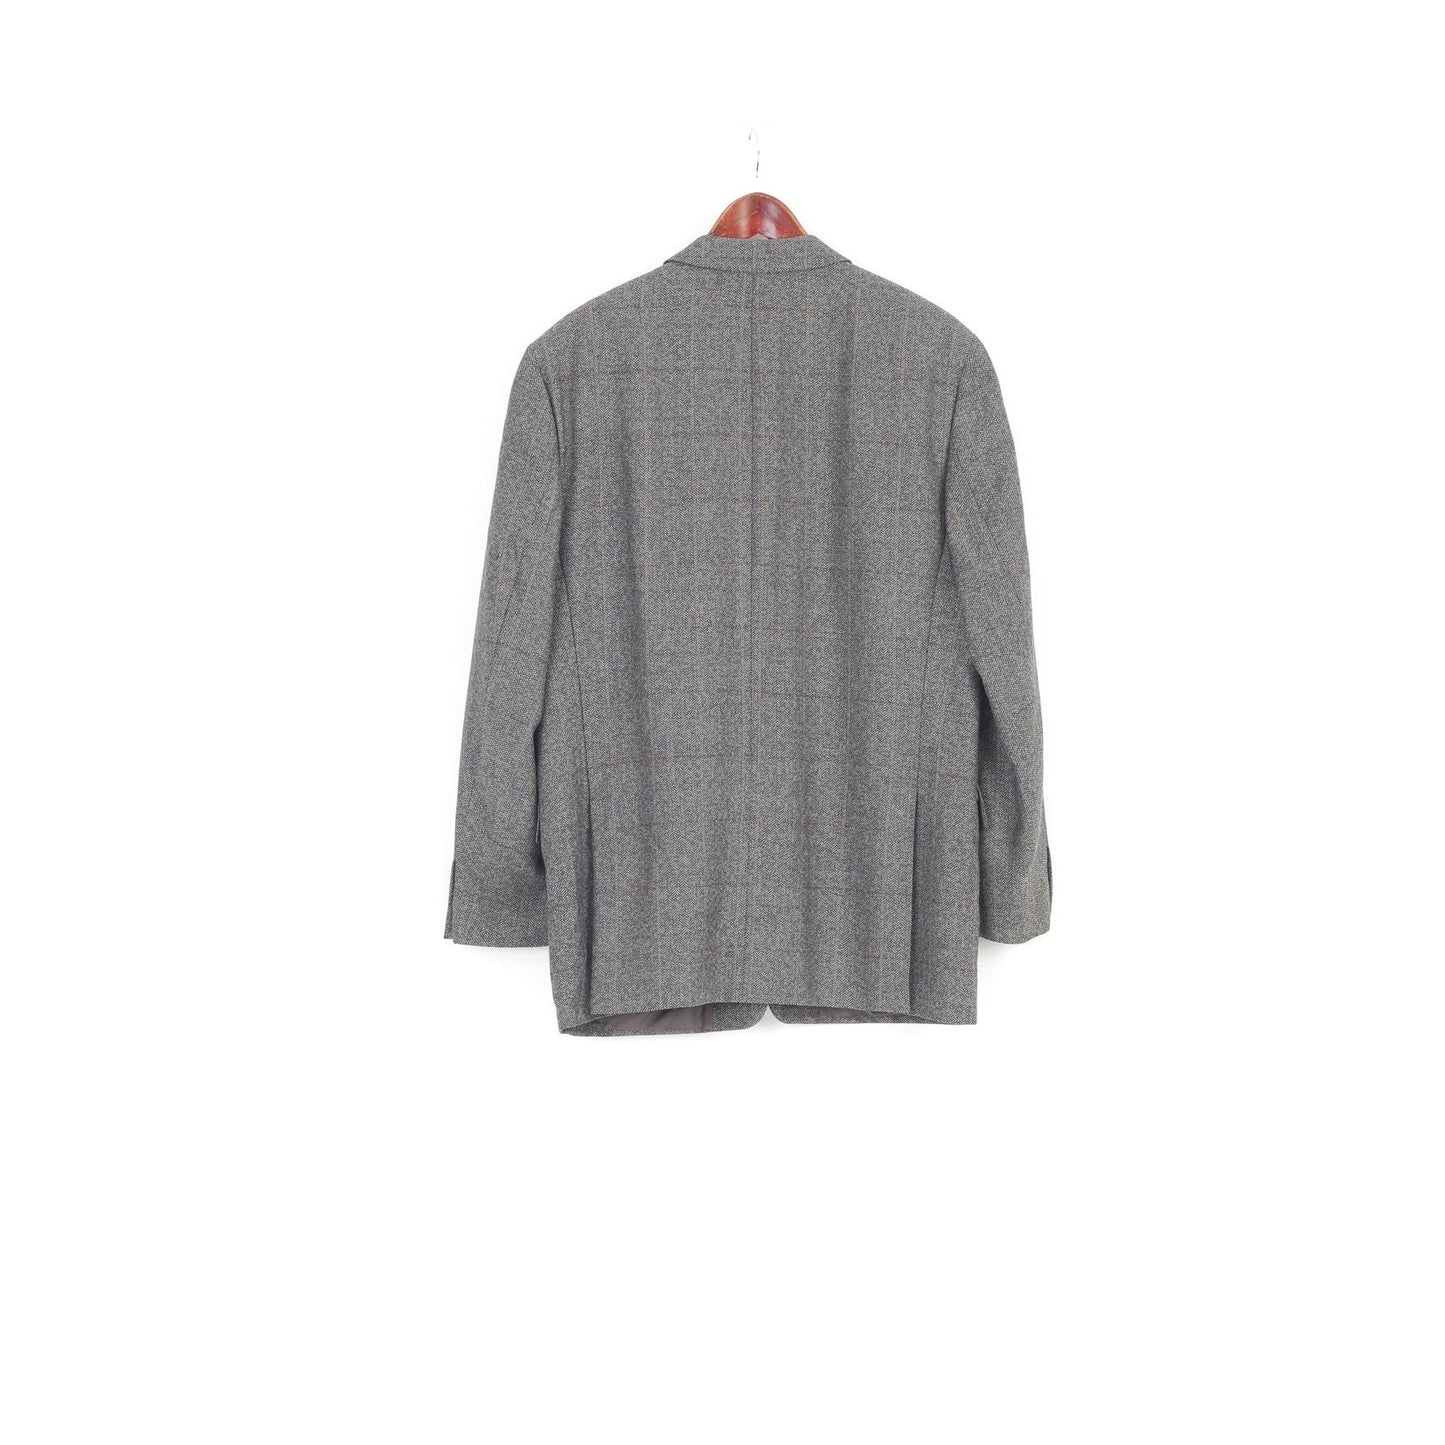 Desch Men 52  Blazer Wool Grey Breasted Jacket Buttons Pockets Top